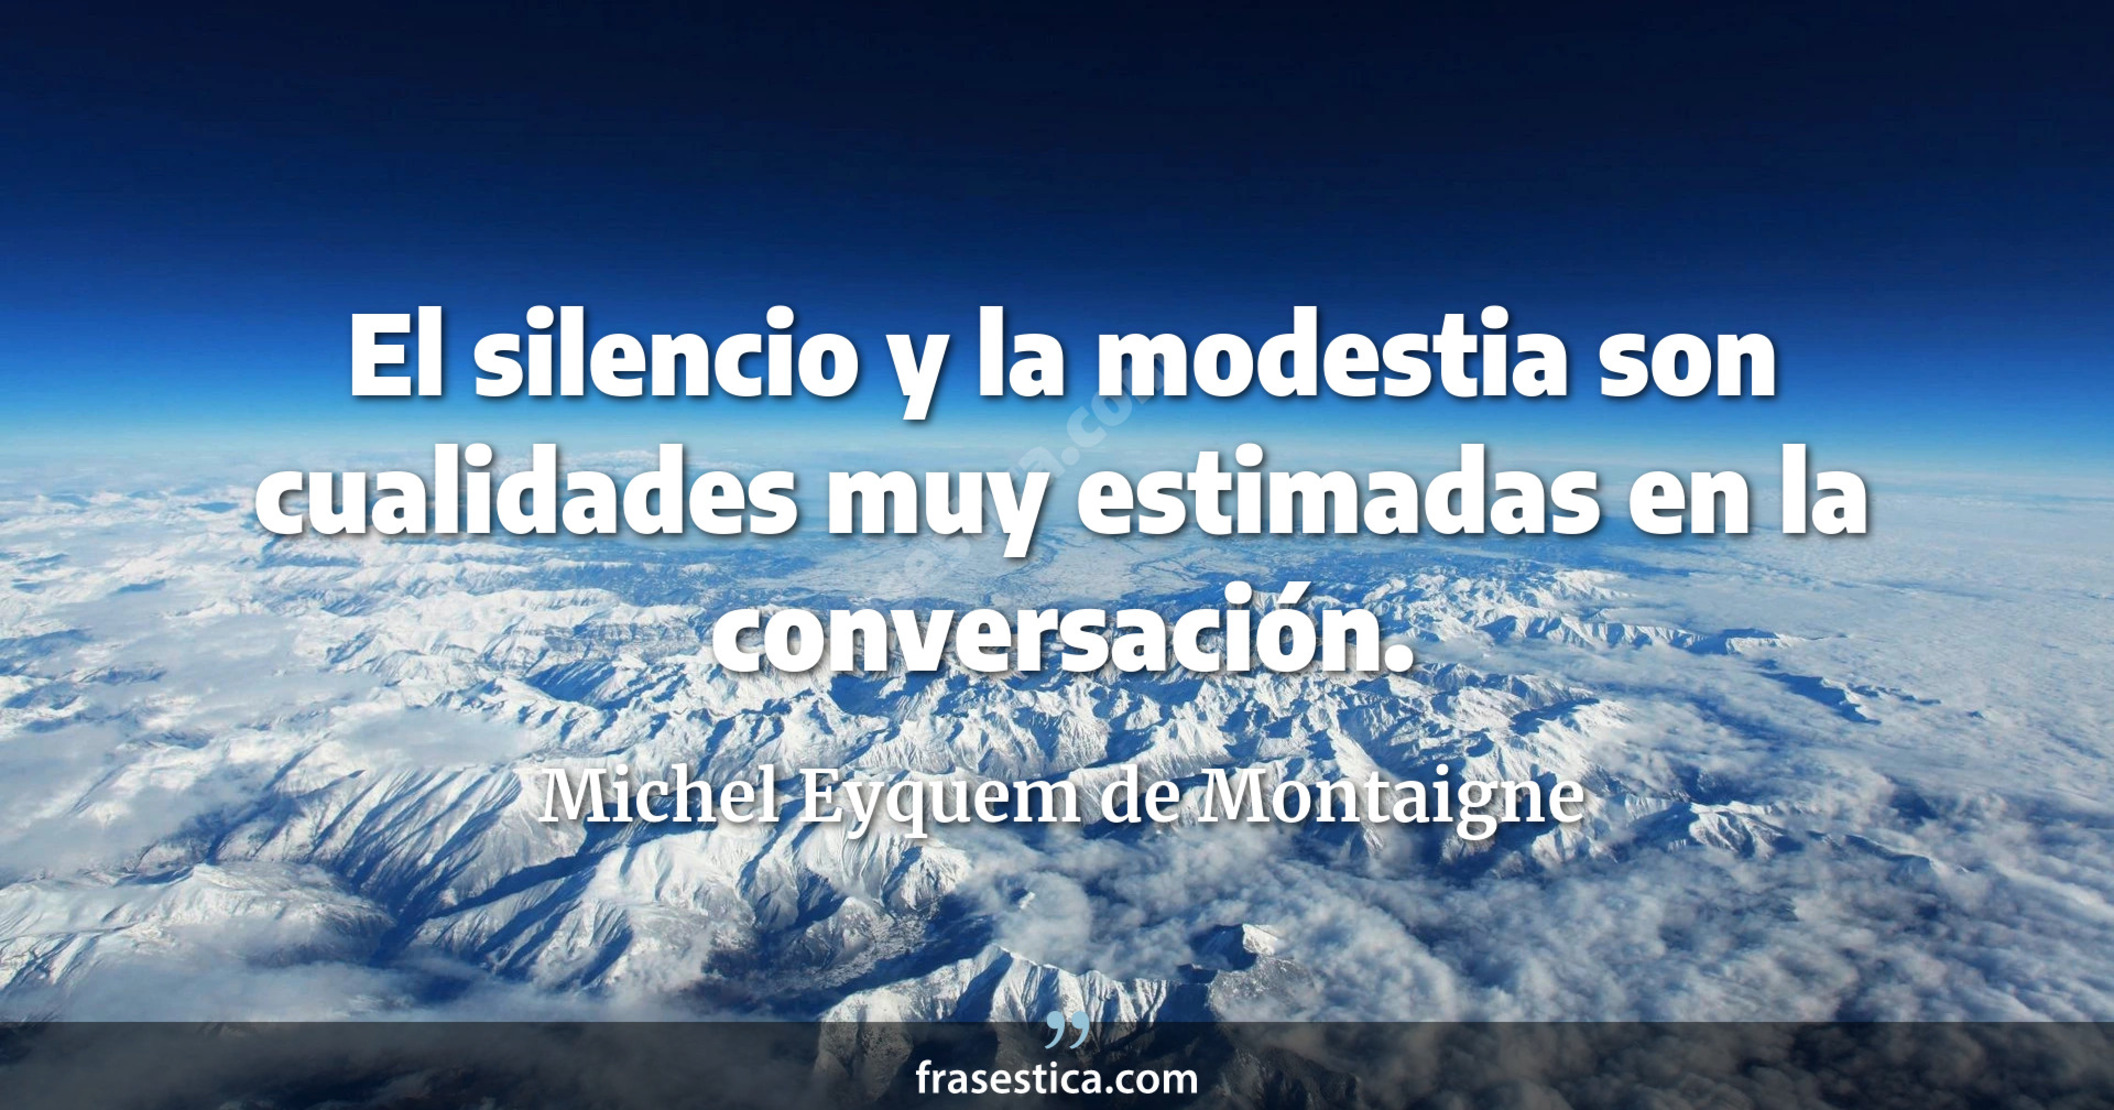 El silencio y la modestia son cualidades muy estimadas en la conversación. - Michel Eyquem de Montaigne